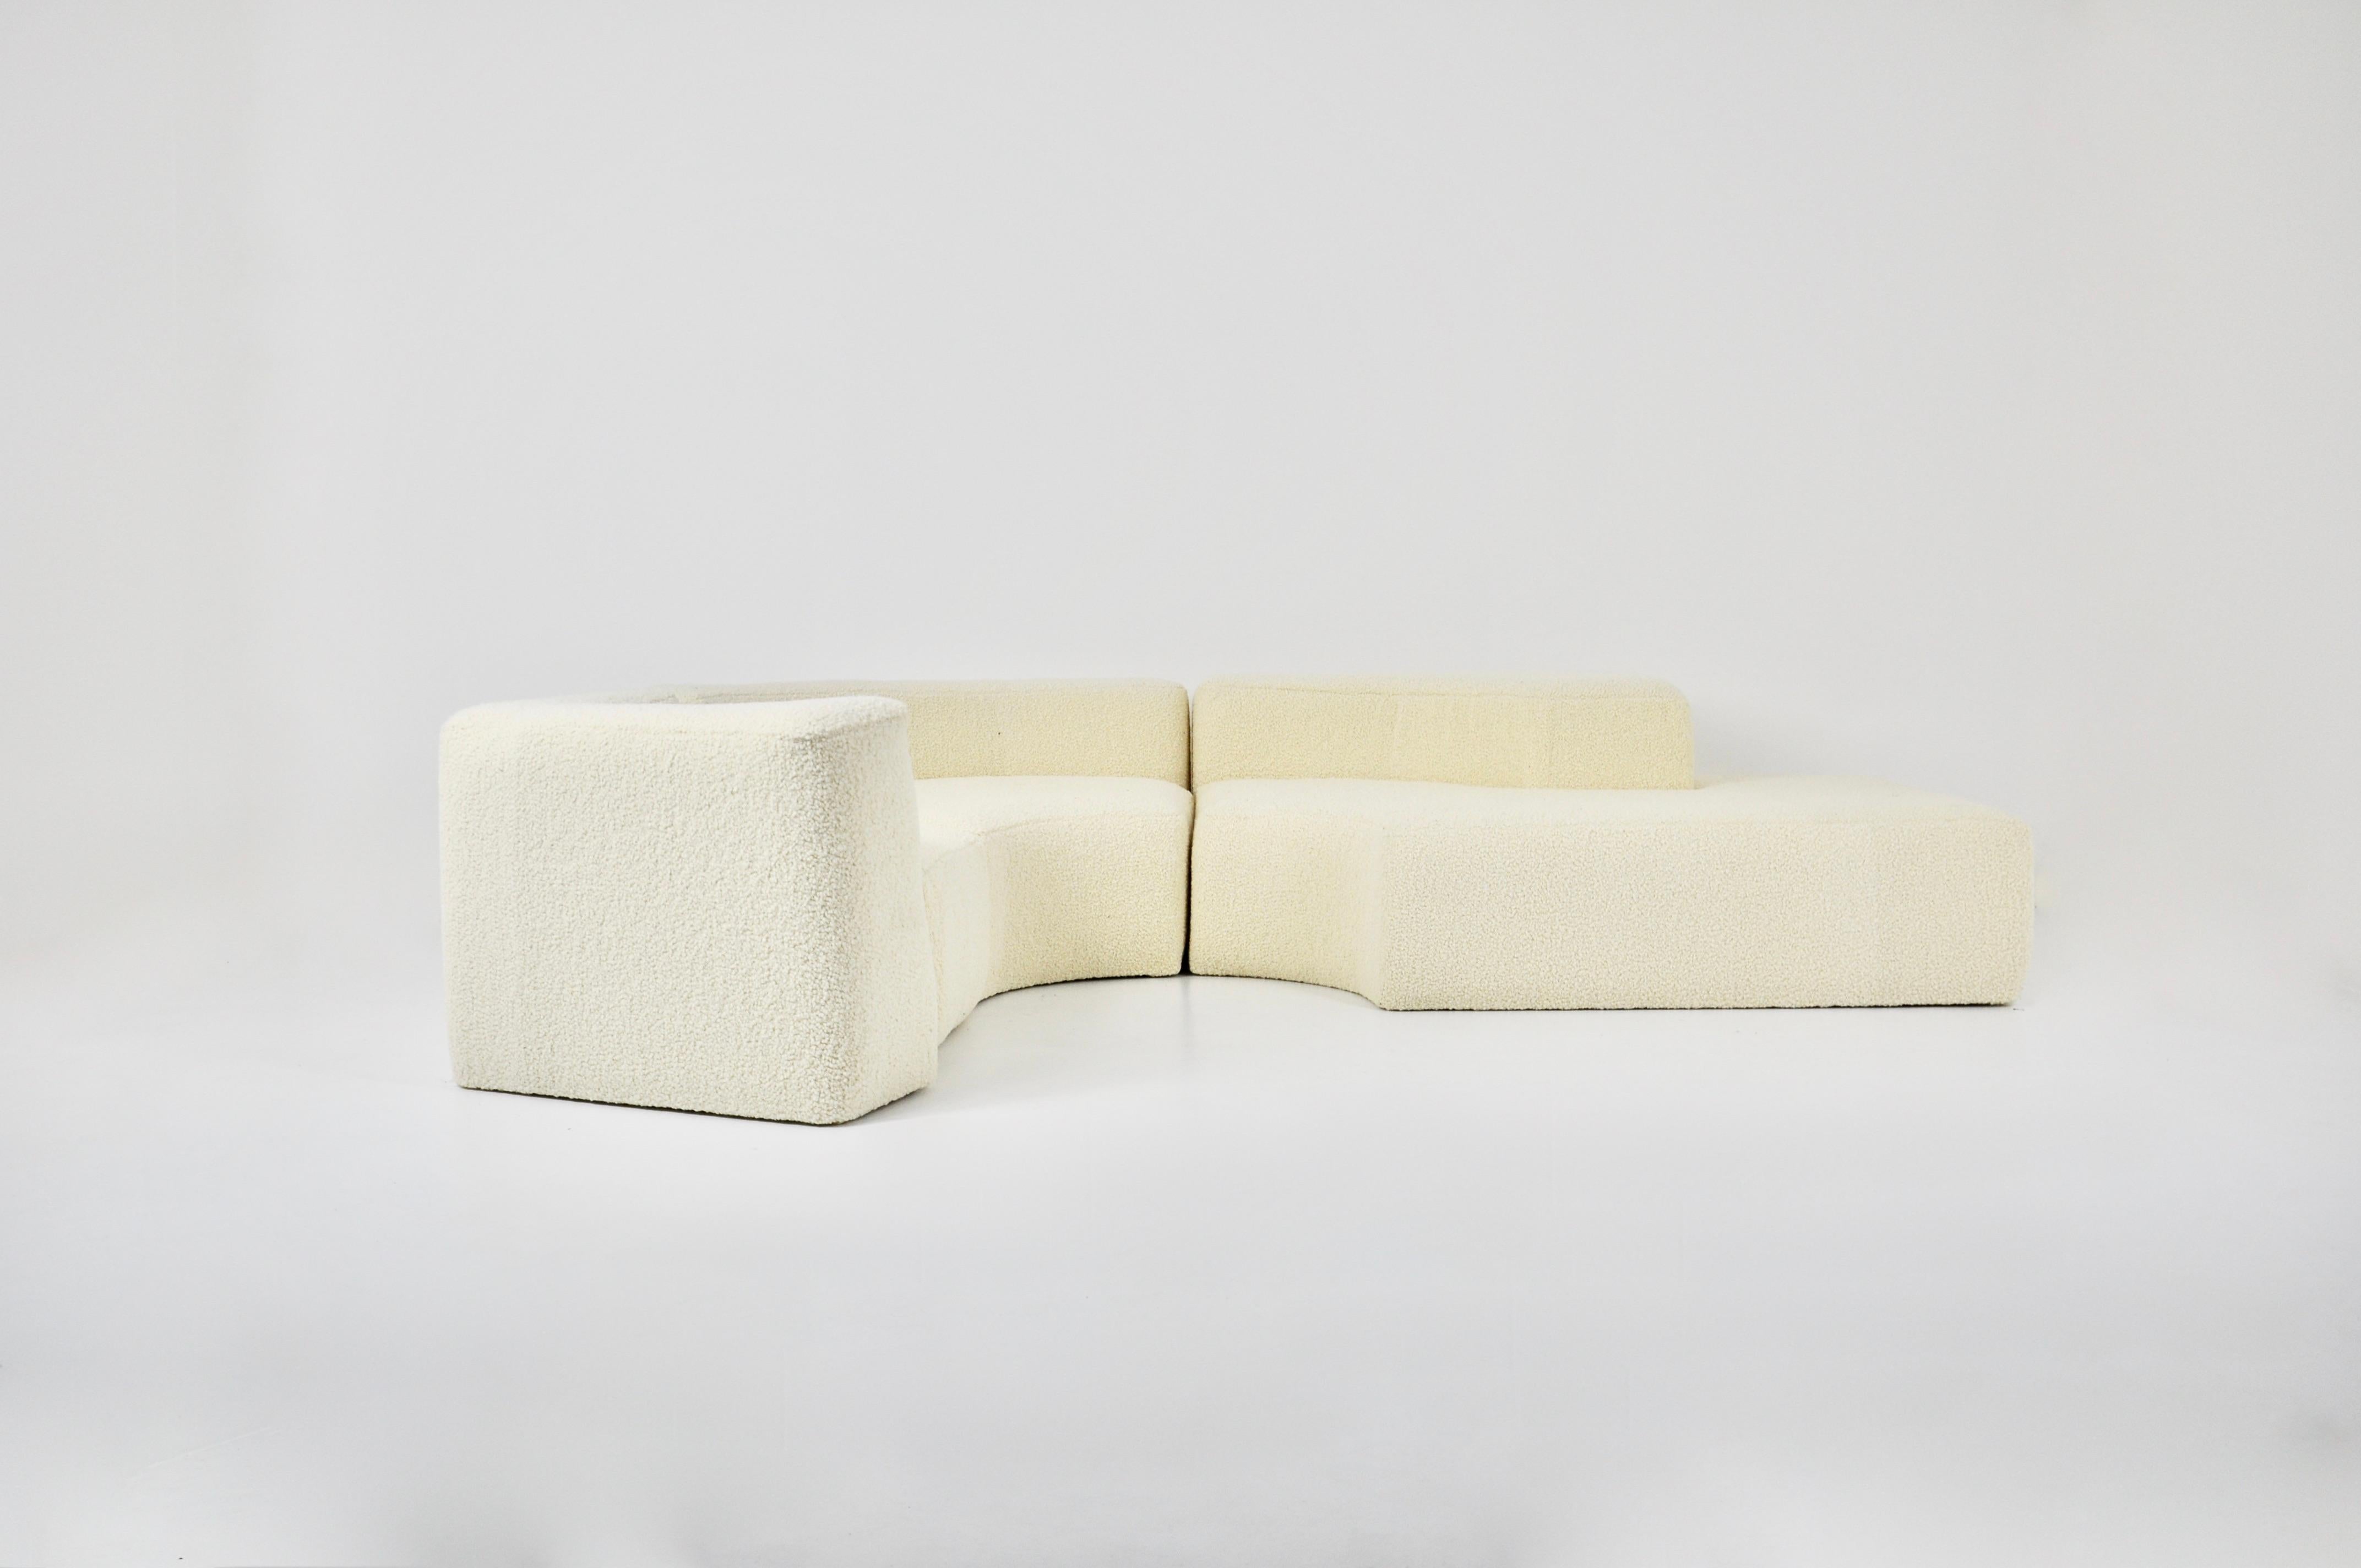 Sofa bestehend aus 3 Elementen in weißem Stoff. Neuer Stoff. Abnutzung durch Zeit und Alter des Stuhls. Maße: Sitzhöhe 37cm.